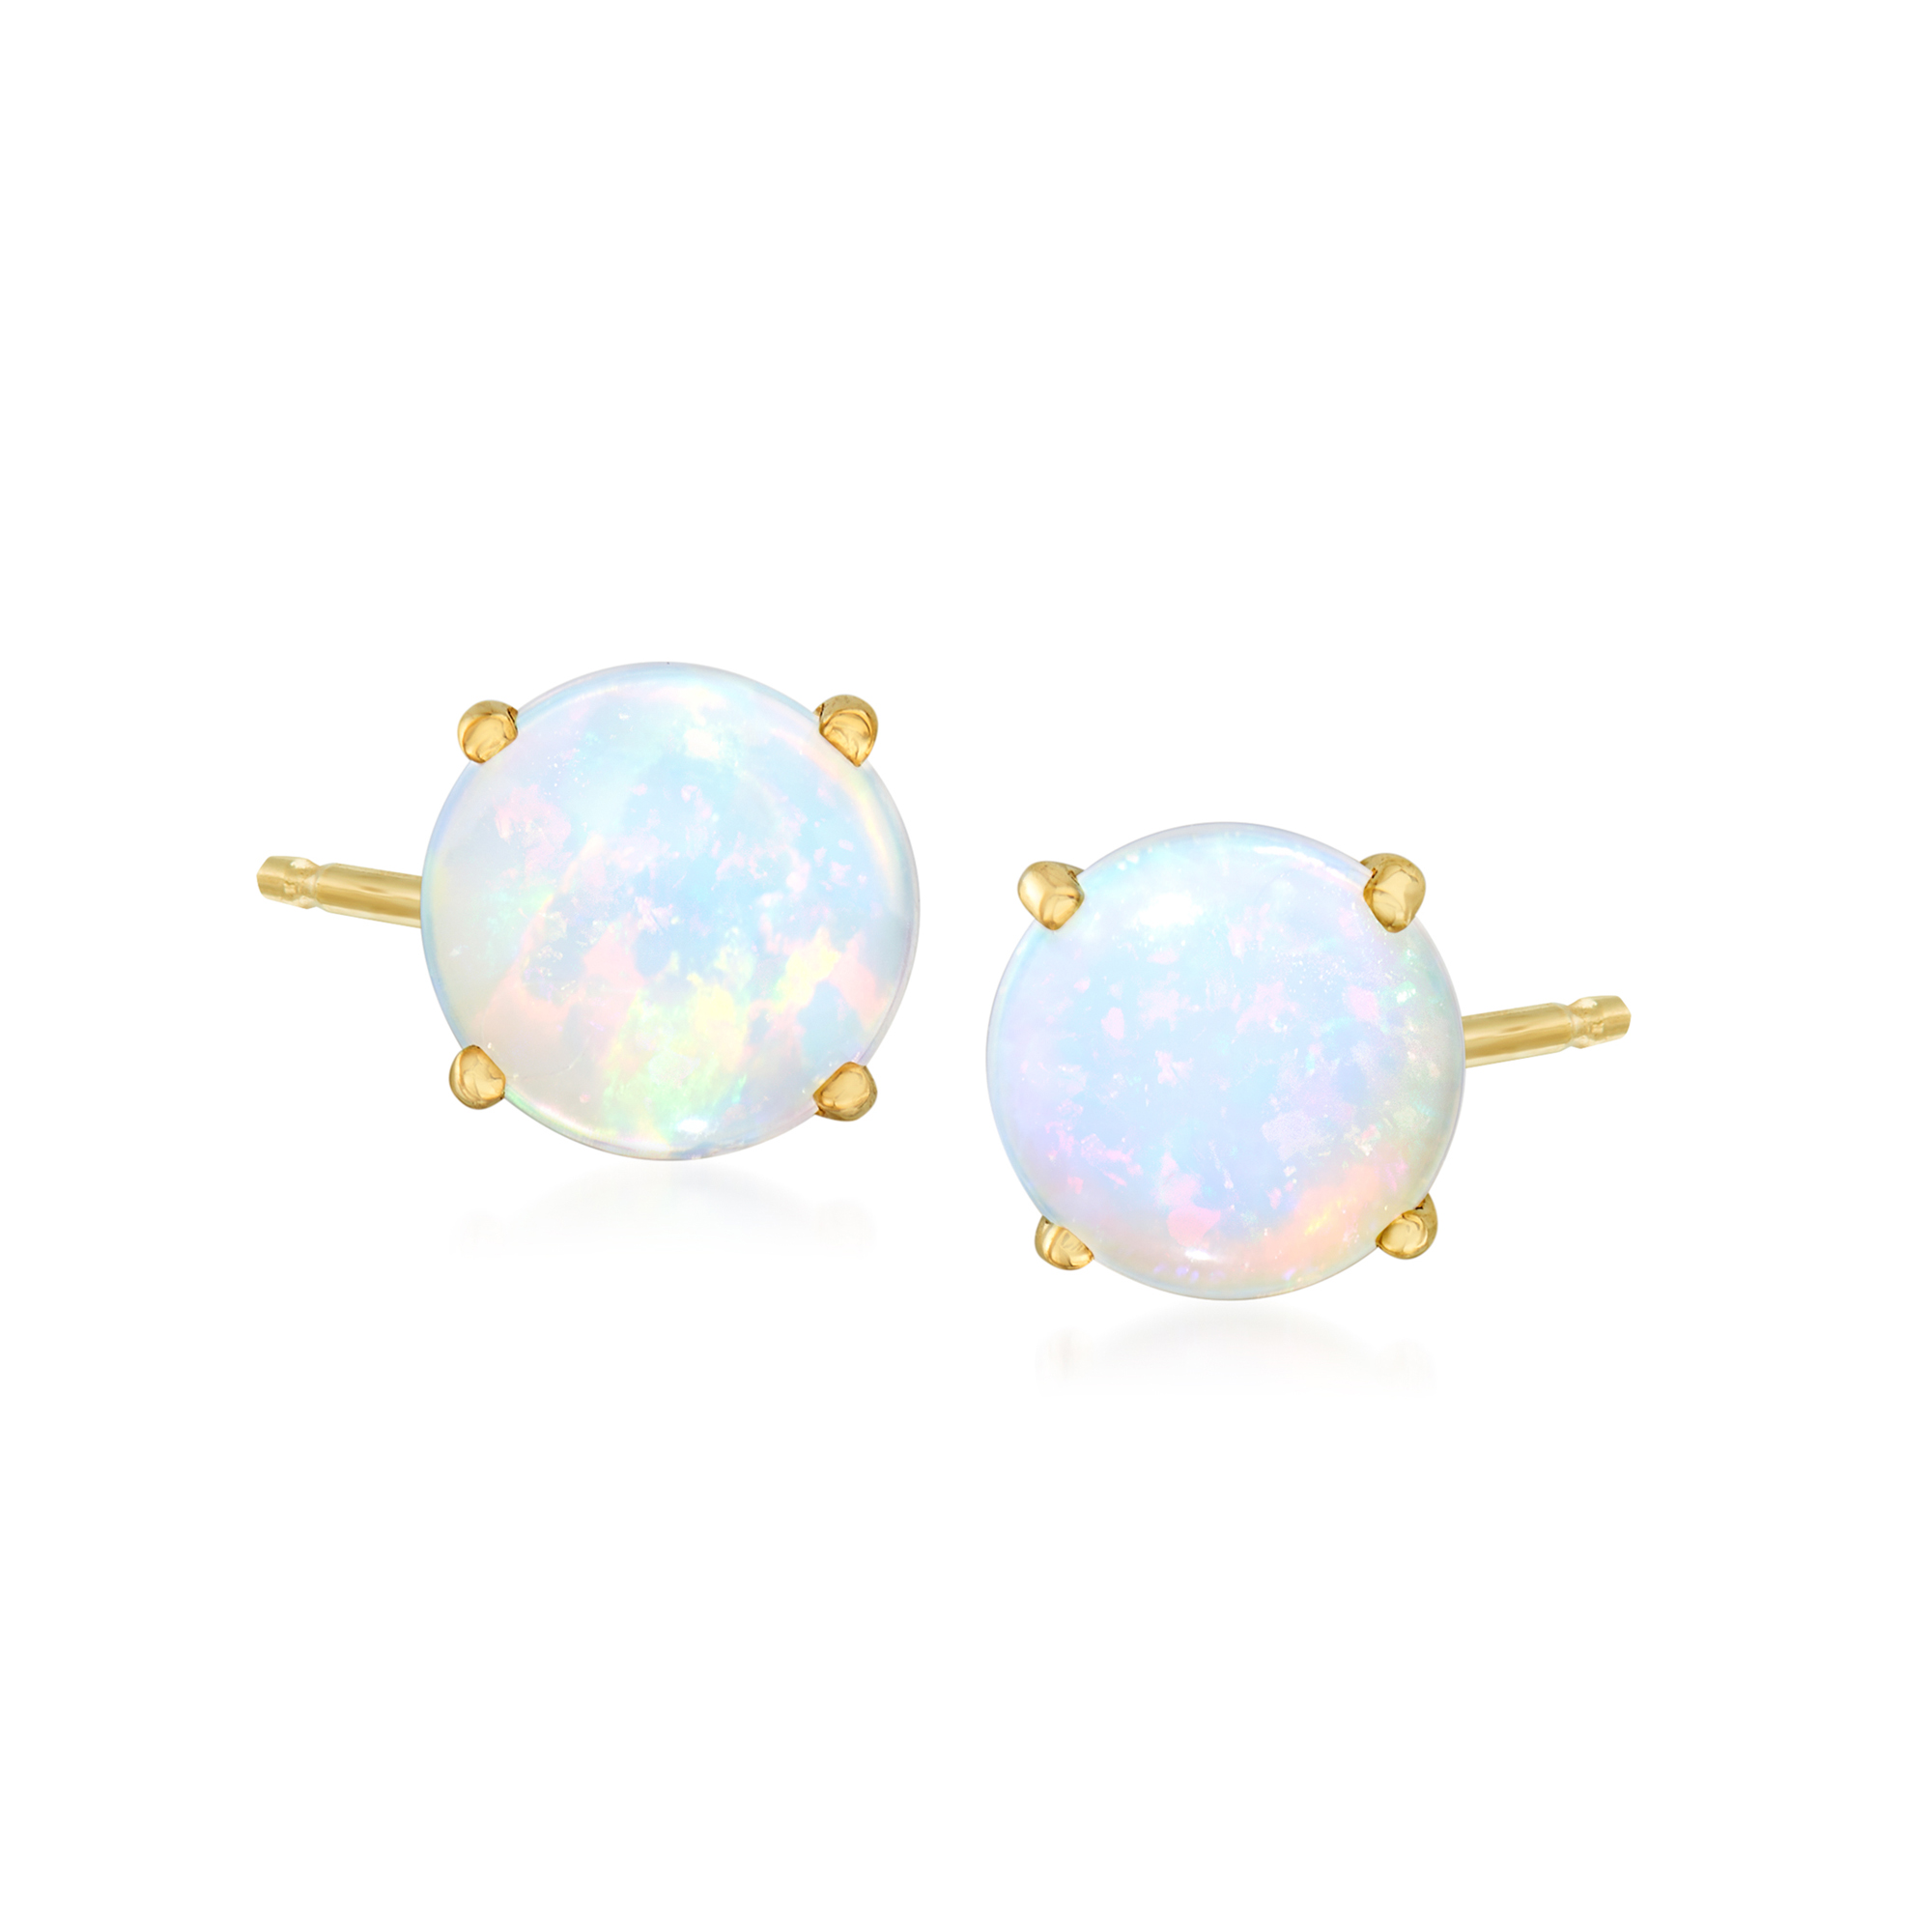 Opal Stud Earrings in 14kt Yellow Gold | Ross-Simons